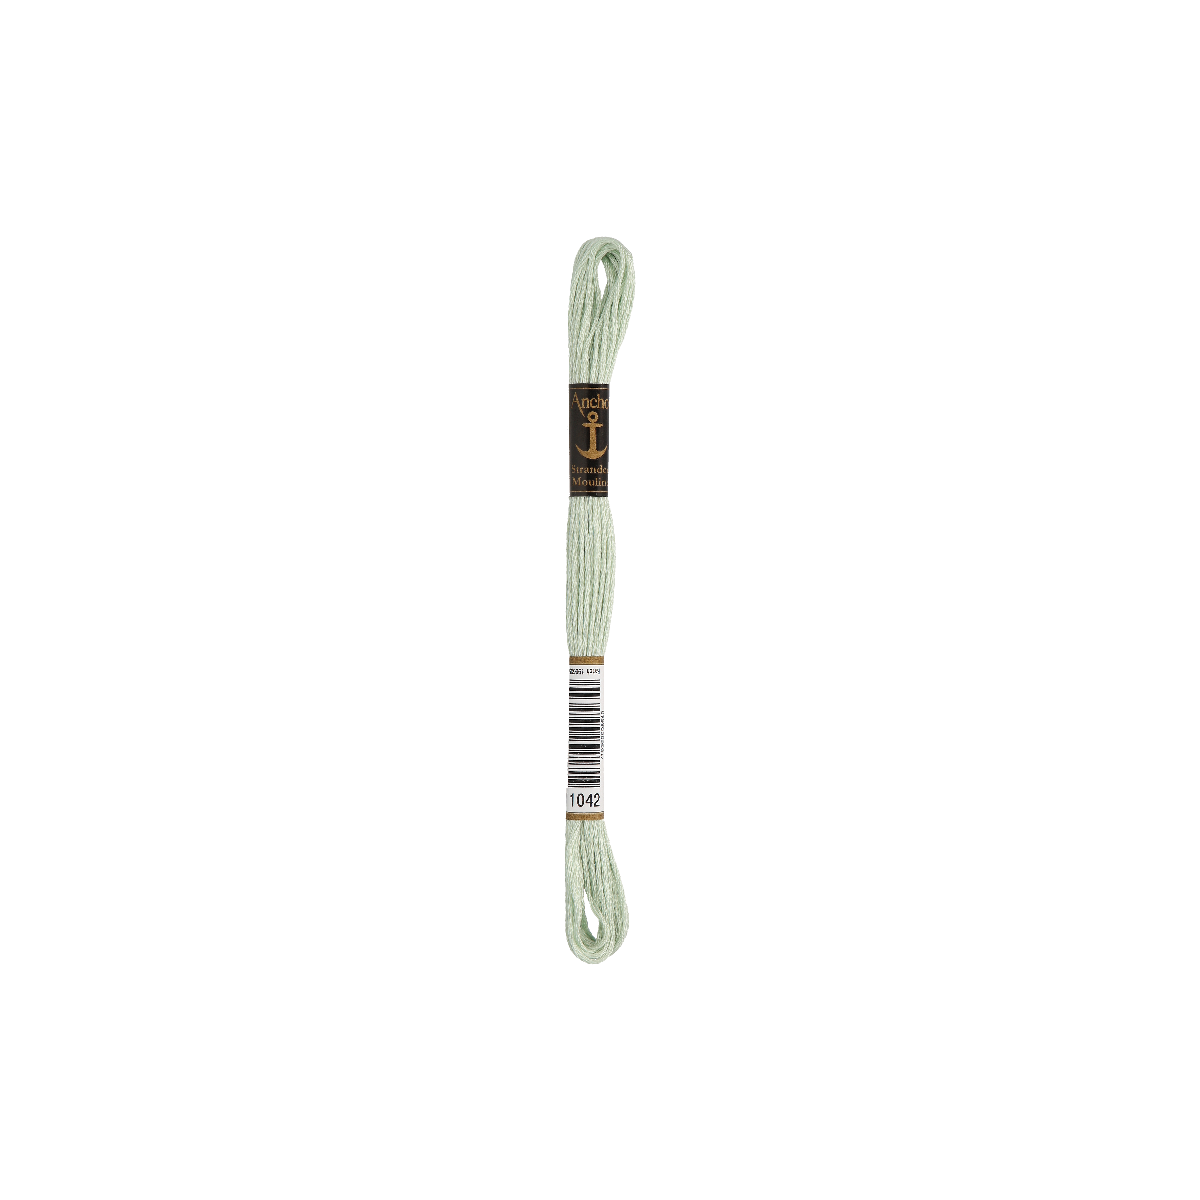 Anchor Sticktwist 8m, verde chiaro, cotone, colore 1042,...